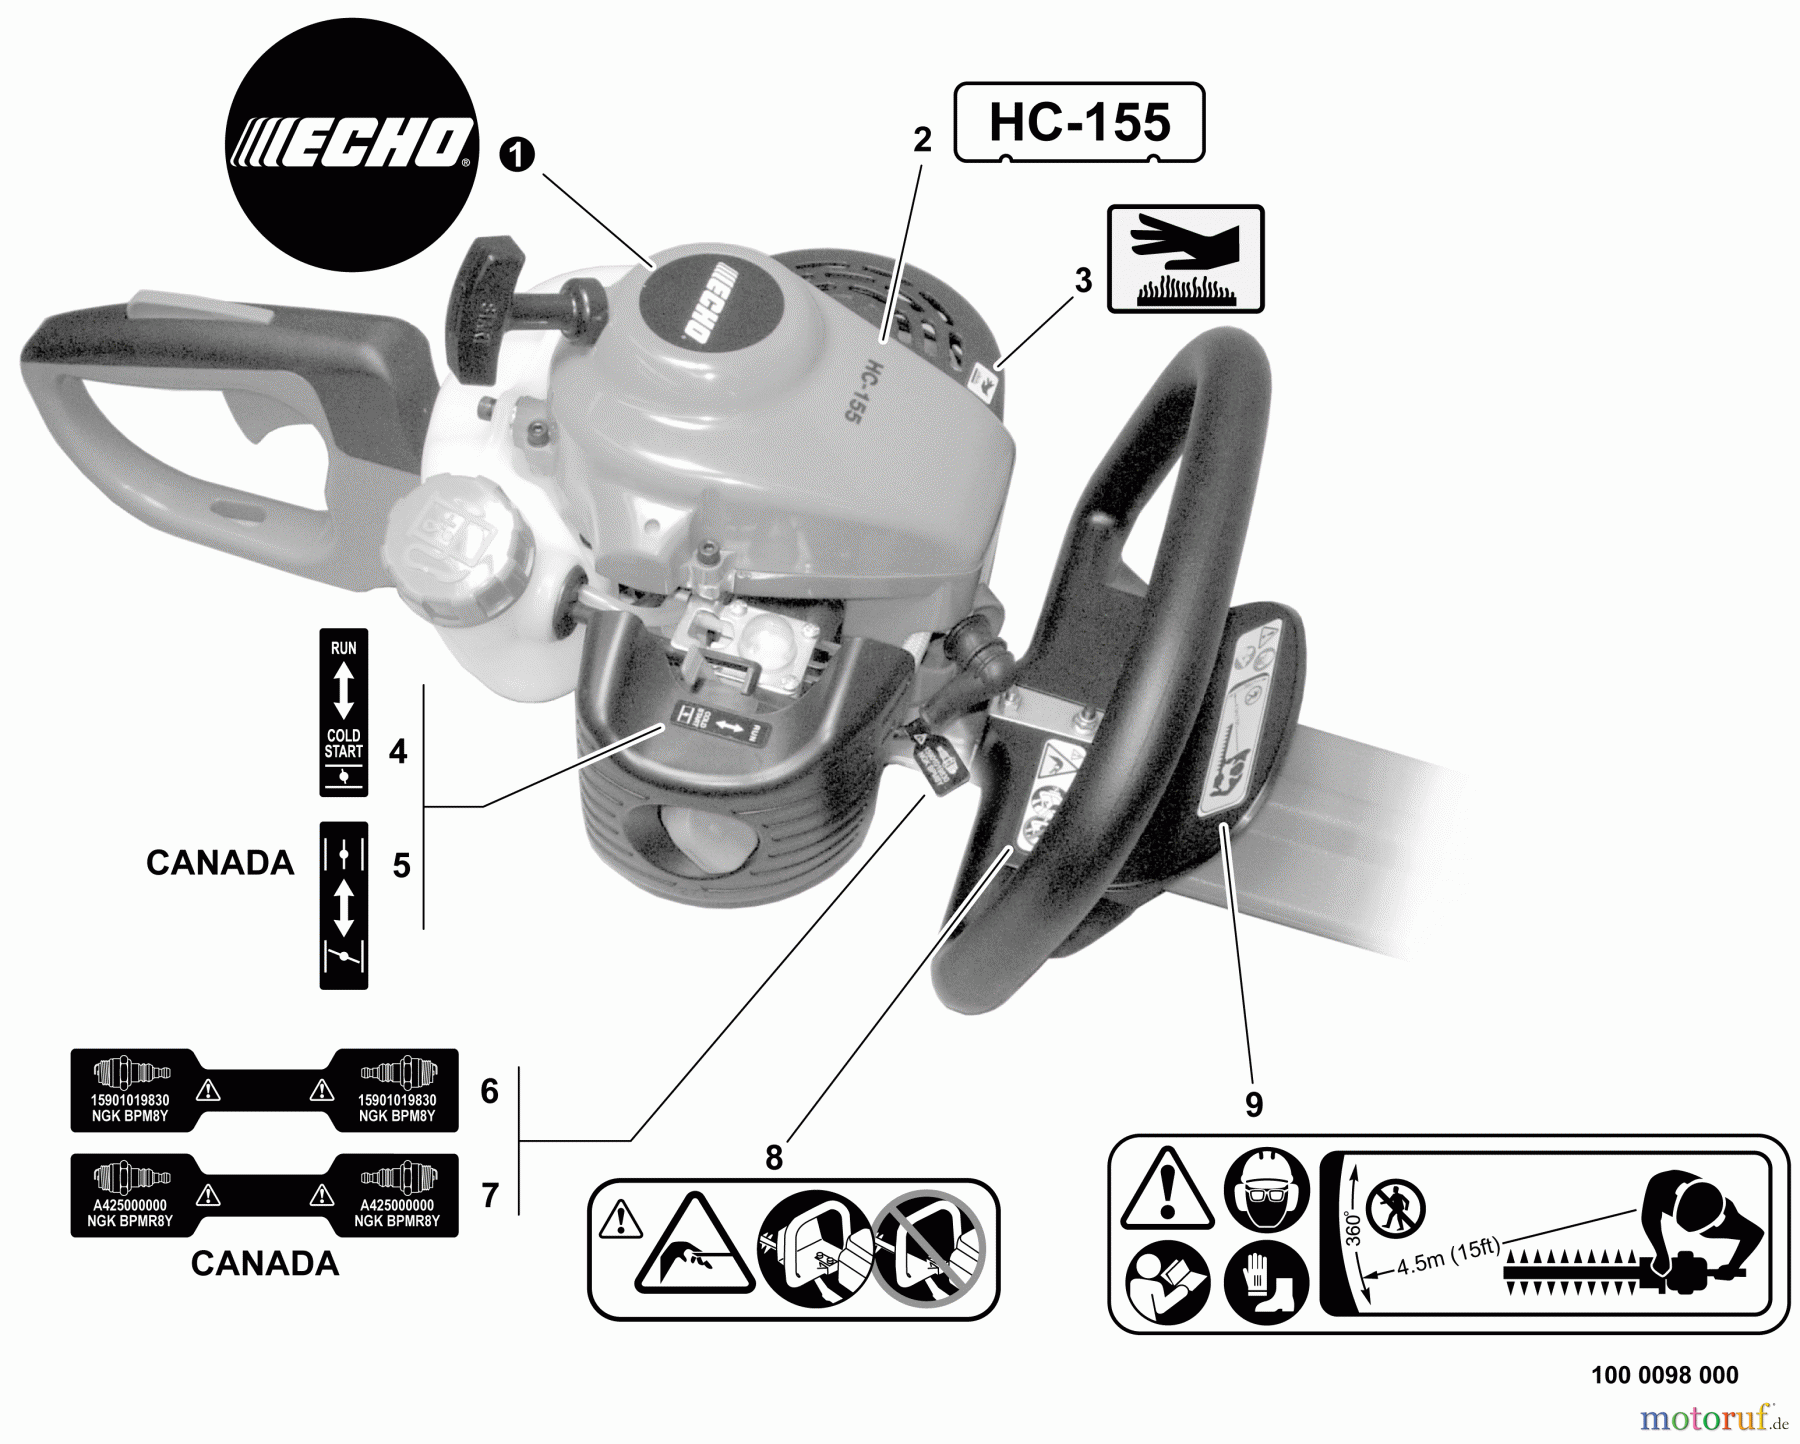  Echo Heckenscheren HC-155 - Echo Hedge Trimmer, S/N: S83713001001 - S83713999999 Labels